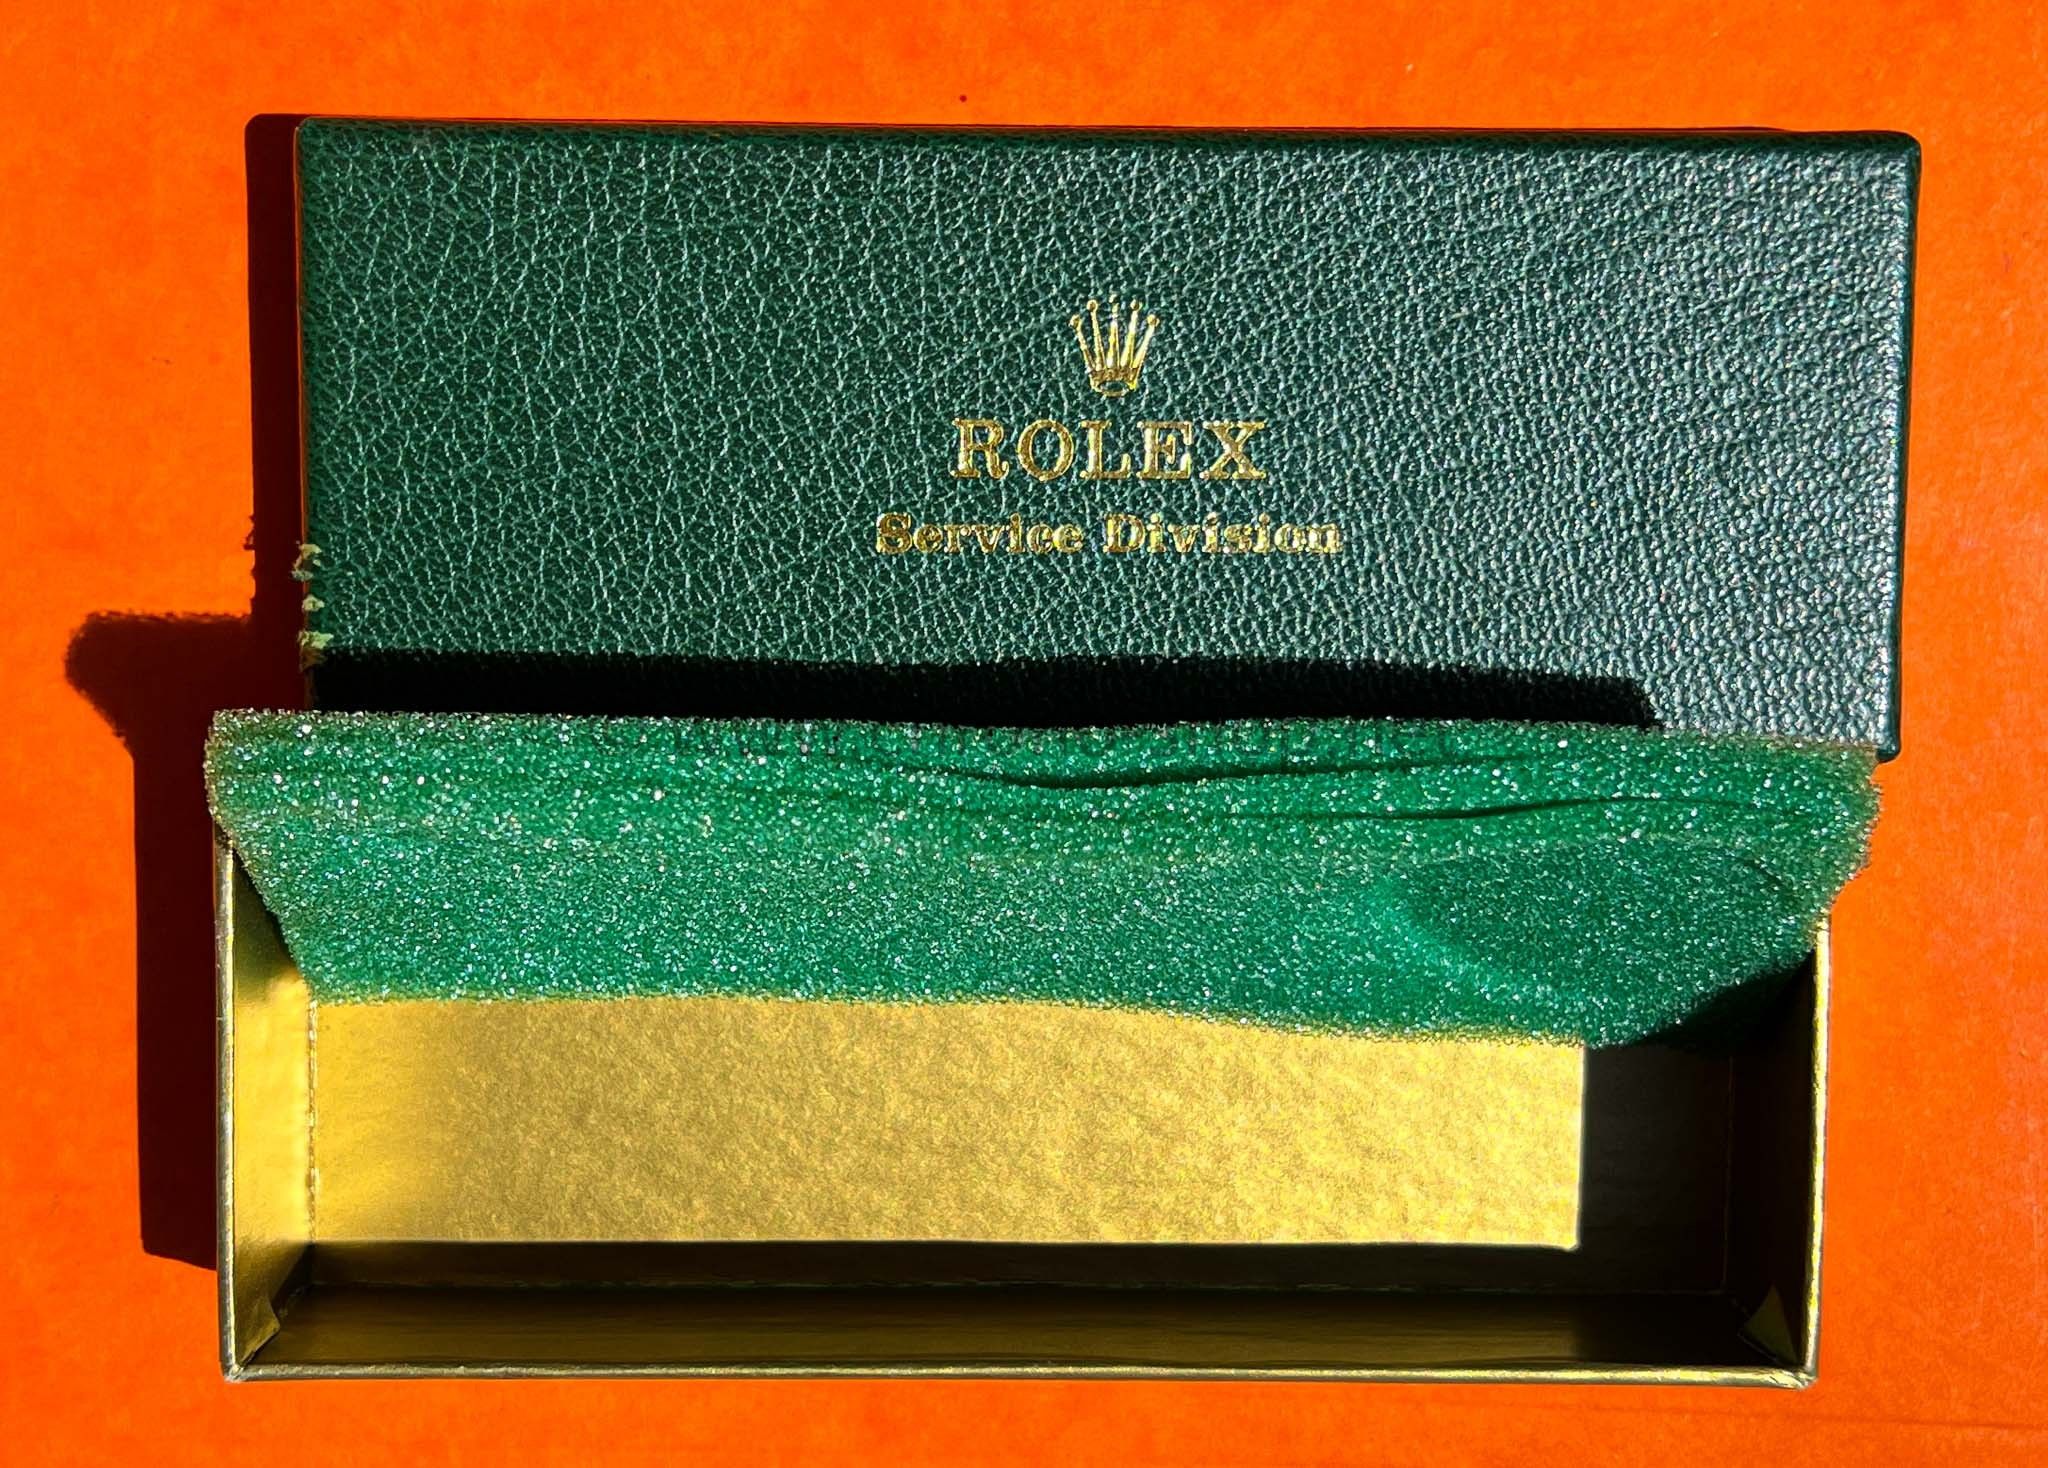 ROLEX 80's BOITE ETUI REVISION ROLEX SERVICE DIVISION MONTRES VINTAGES SUBMARINER, DAYTONA,GMT ROLEX VINTAGE